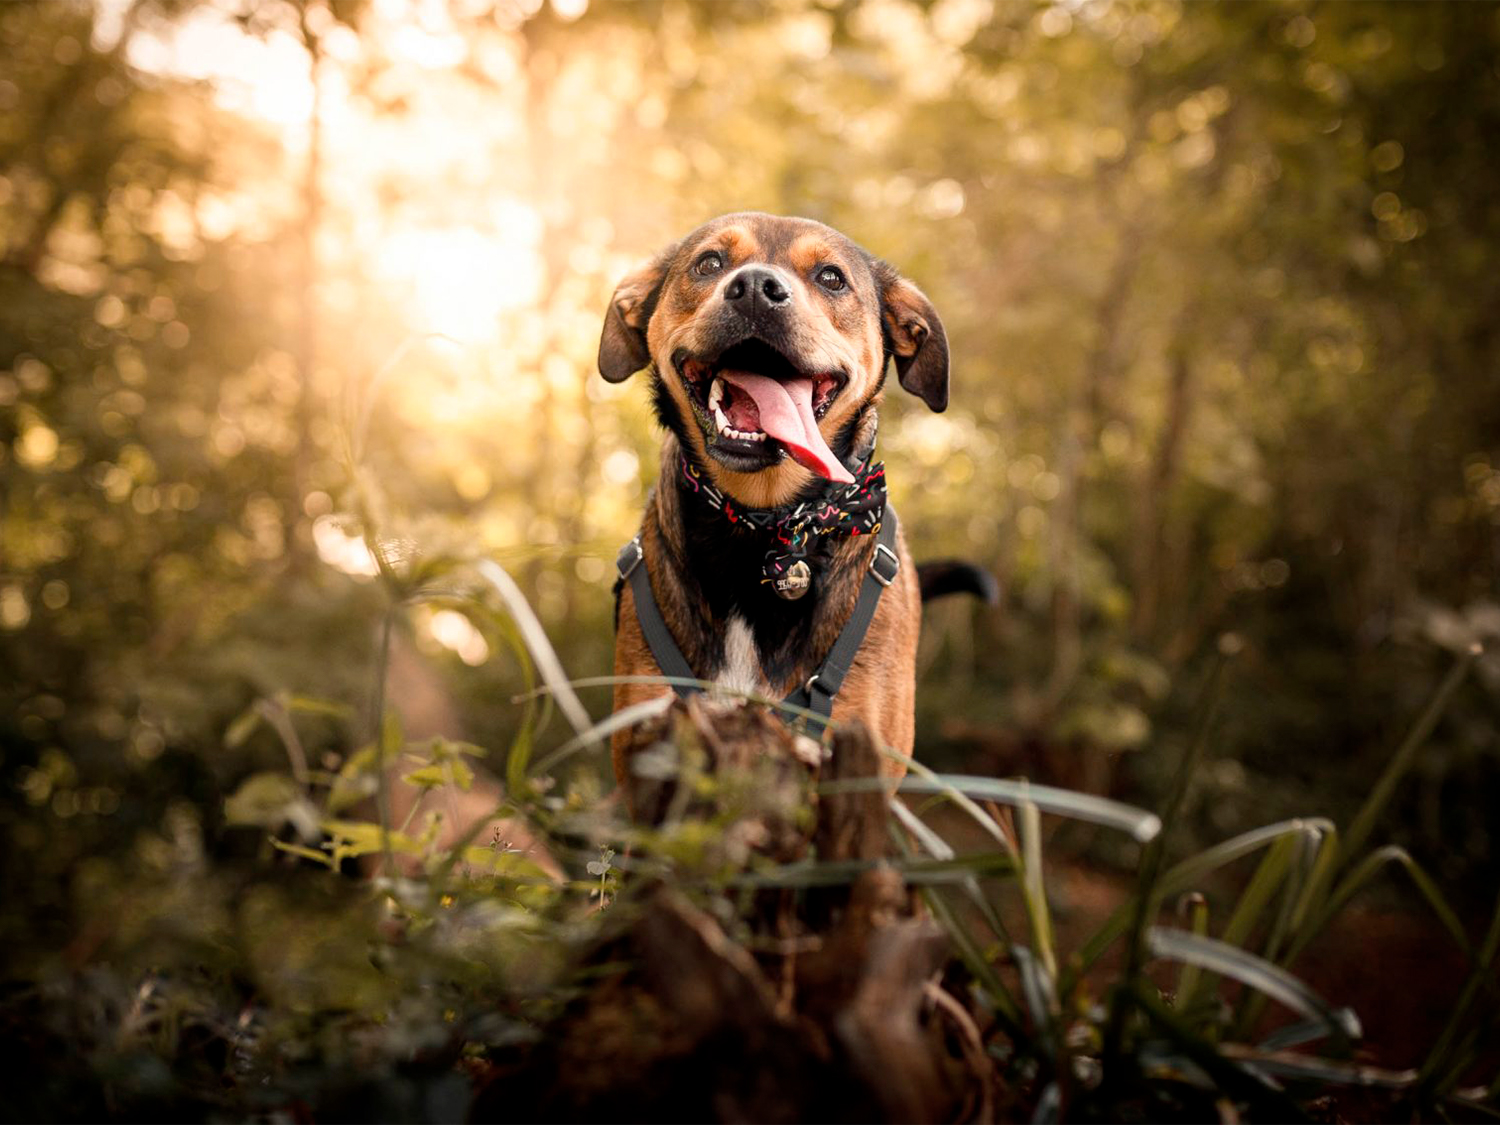 Clicks Felizes: Dicas fotográficas irresistíveis para eternizar seu pet!